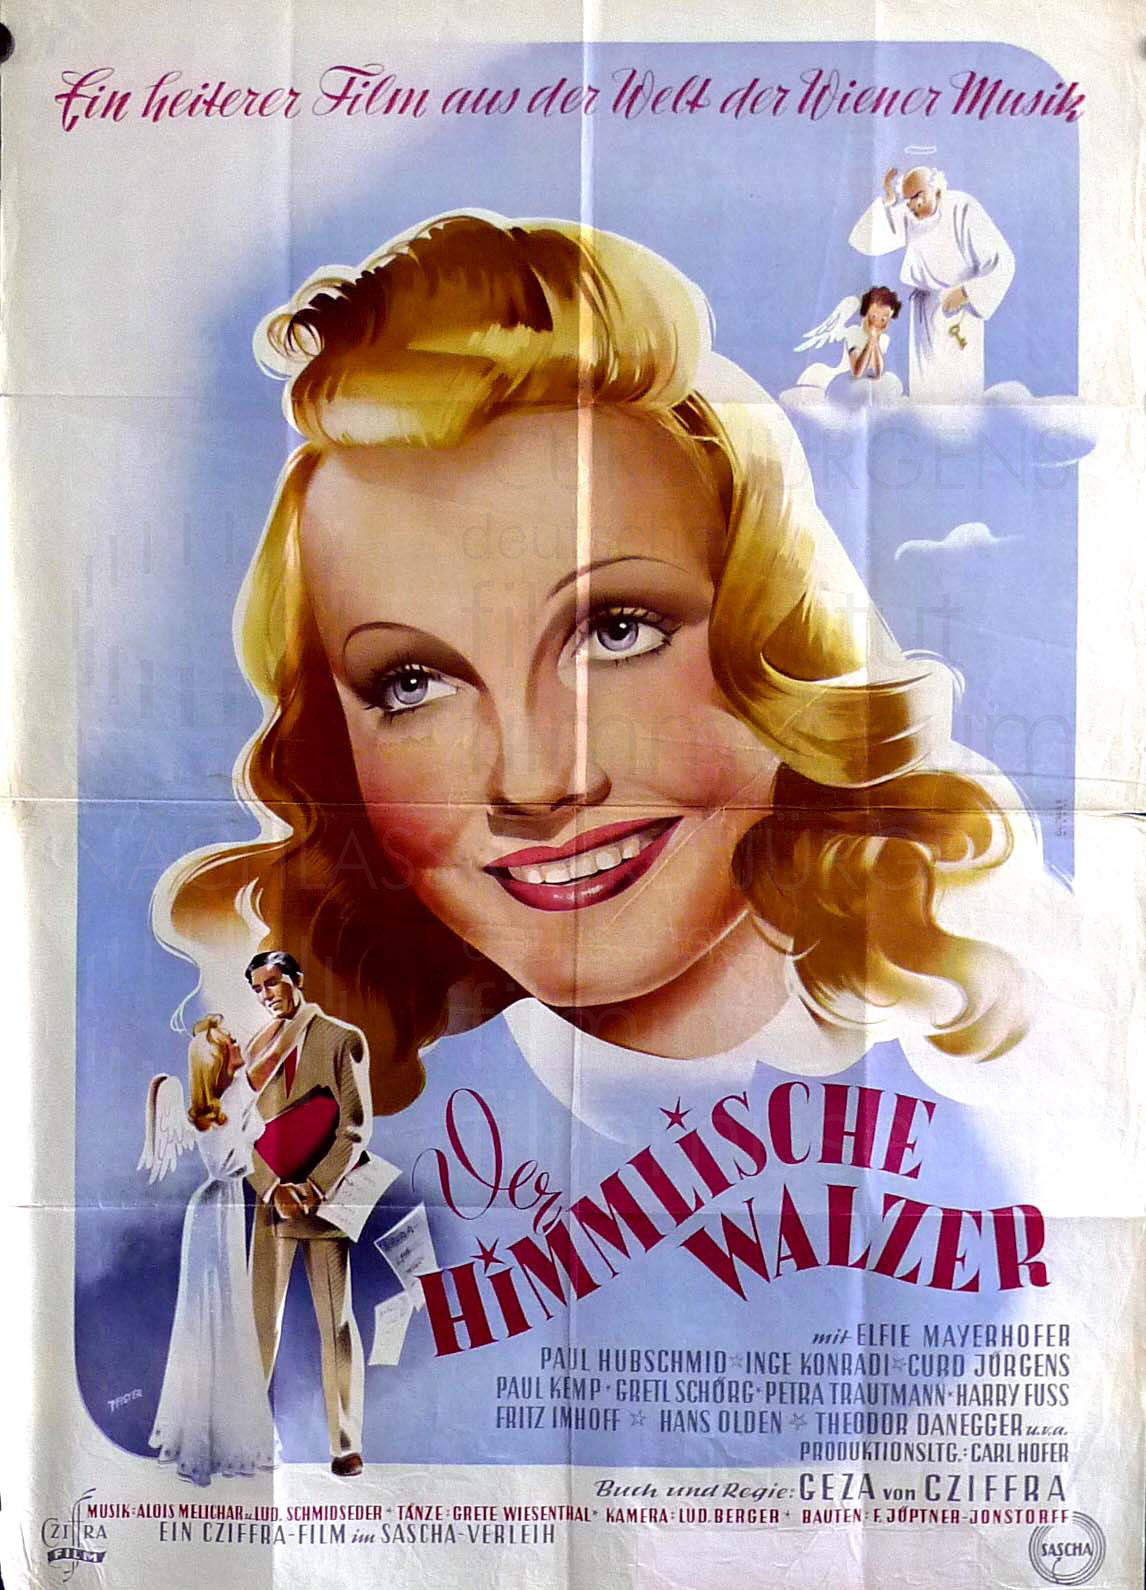 DER HIMMLISCHE WALZER (1948)